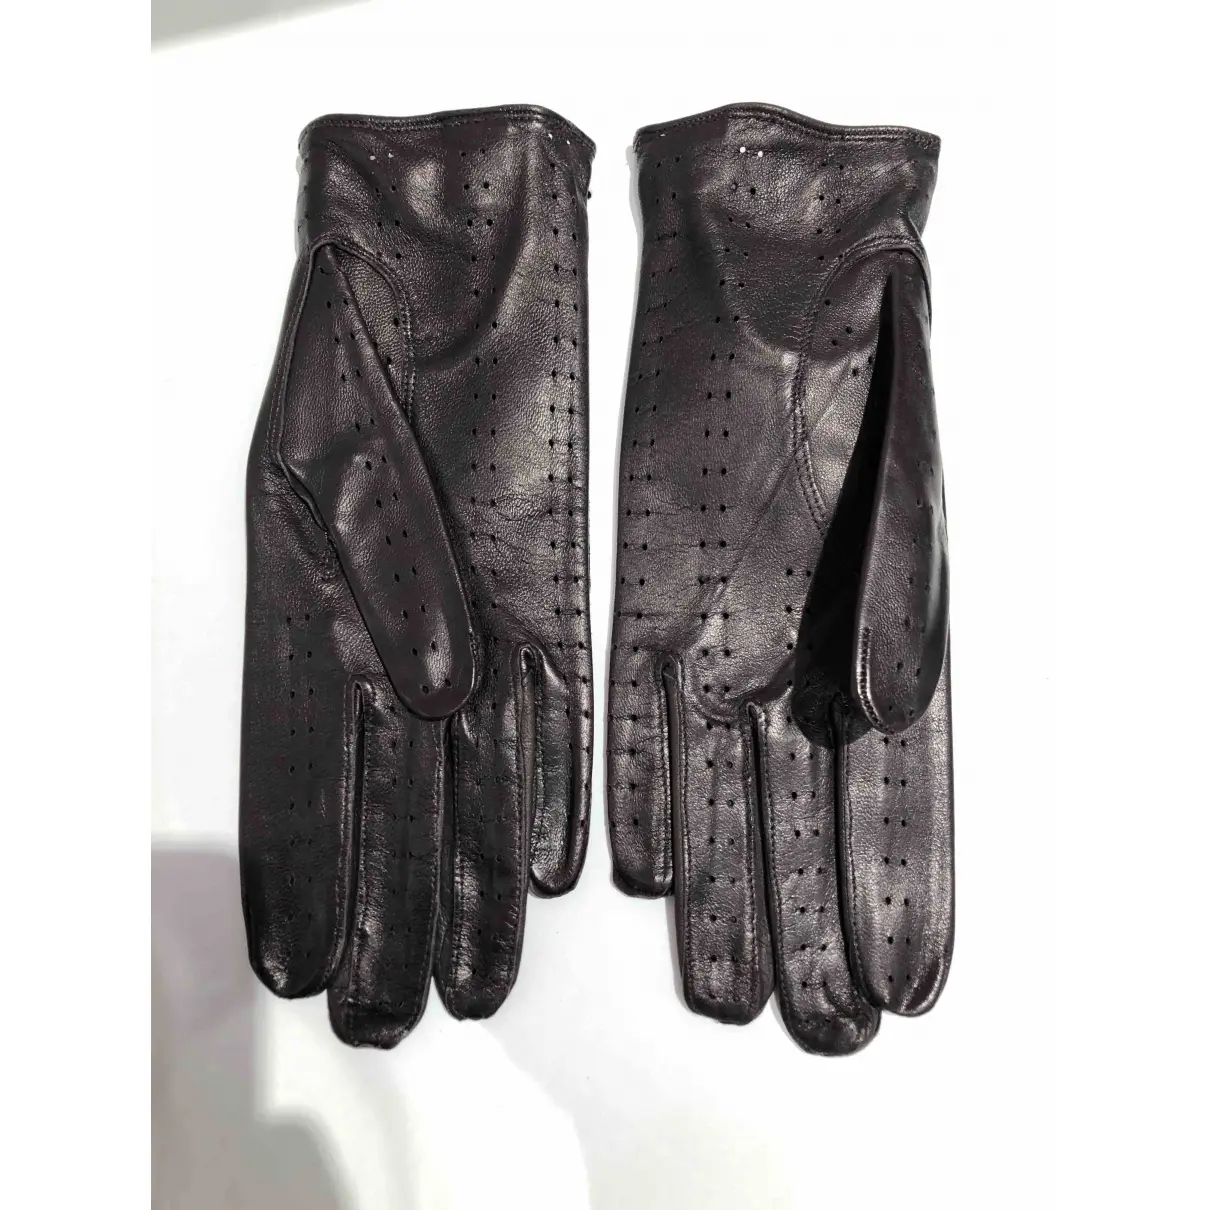 Buy Sermoneta Gloves Leather gloves online